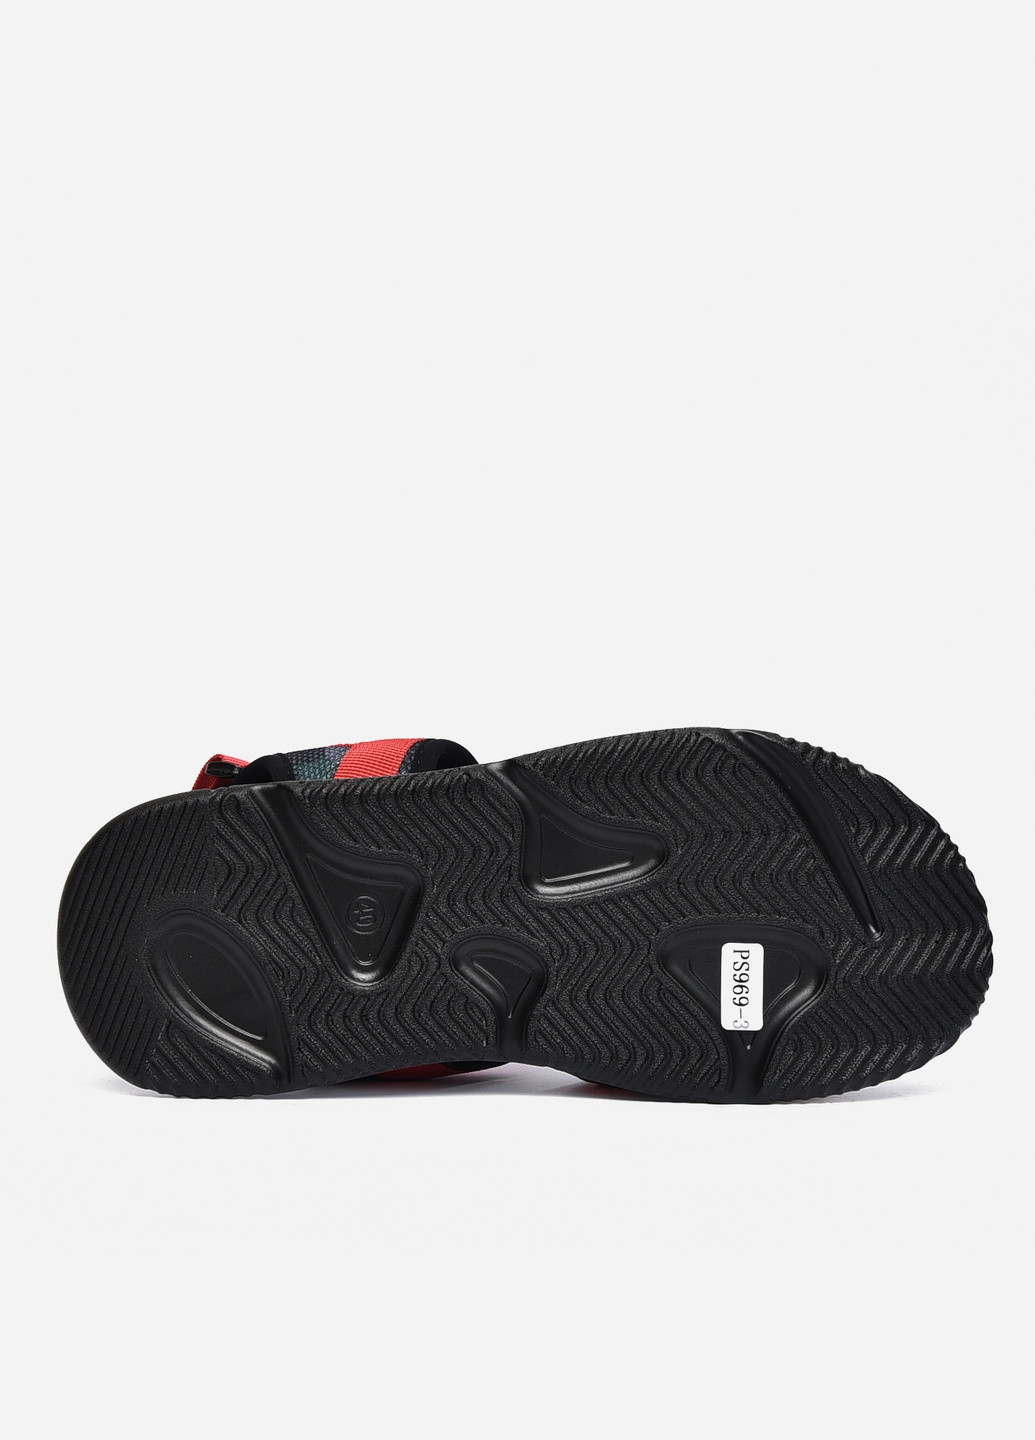 Пляжные сандалии мужские чорно-красного цвета текстиль Let's Shop